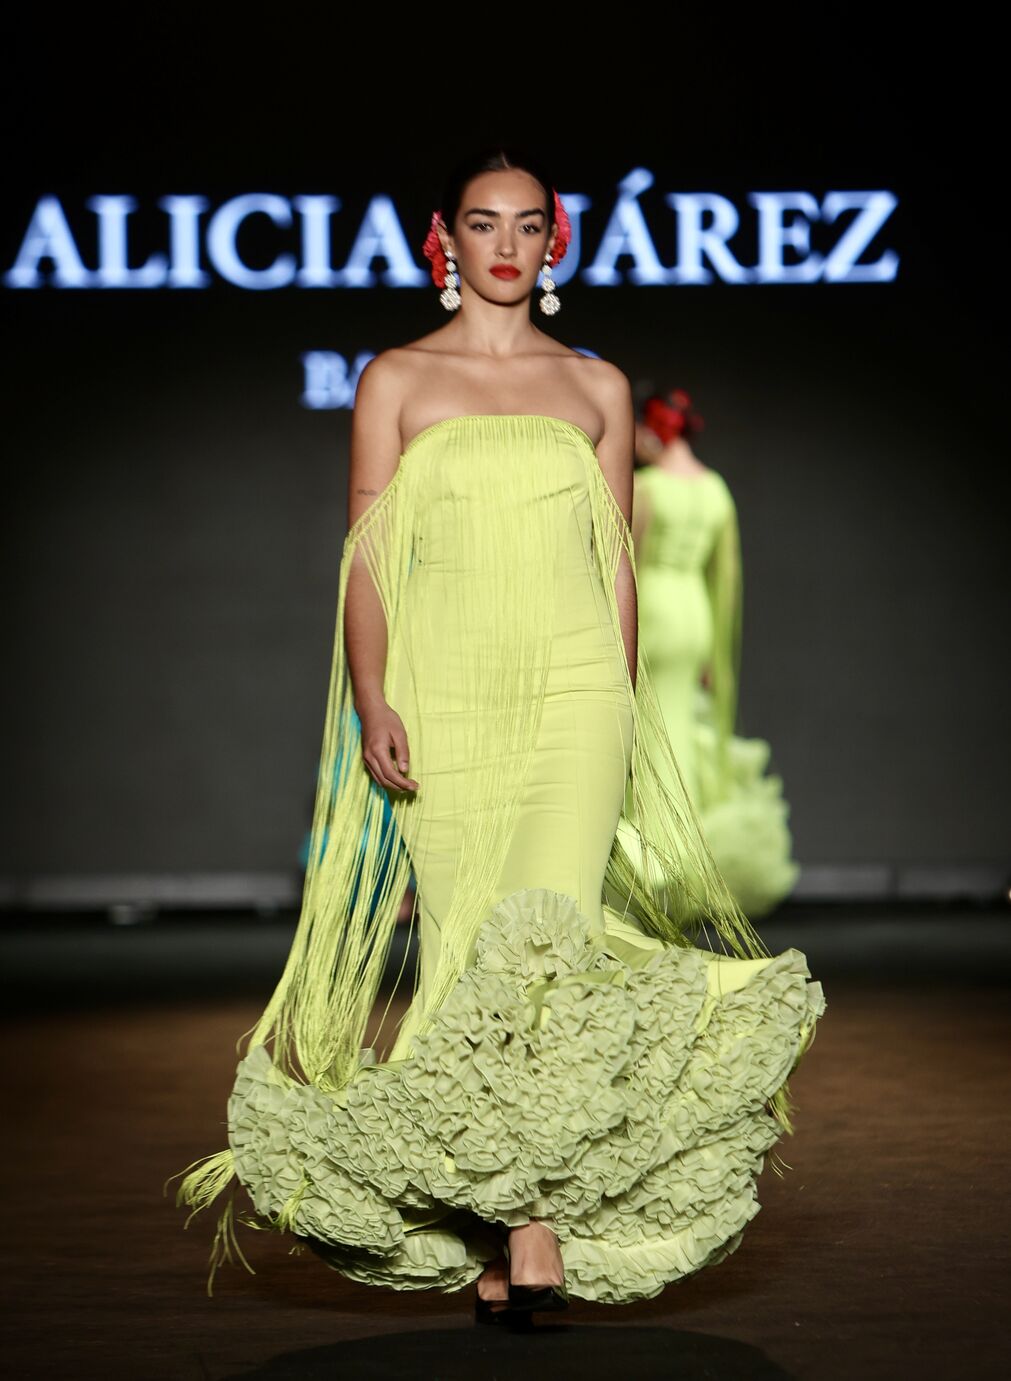 Desfile de Alicia Su&aacute;rez en We Love Flamenco 2024, todas las fotos